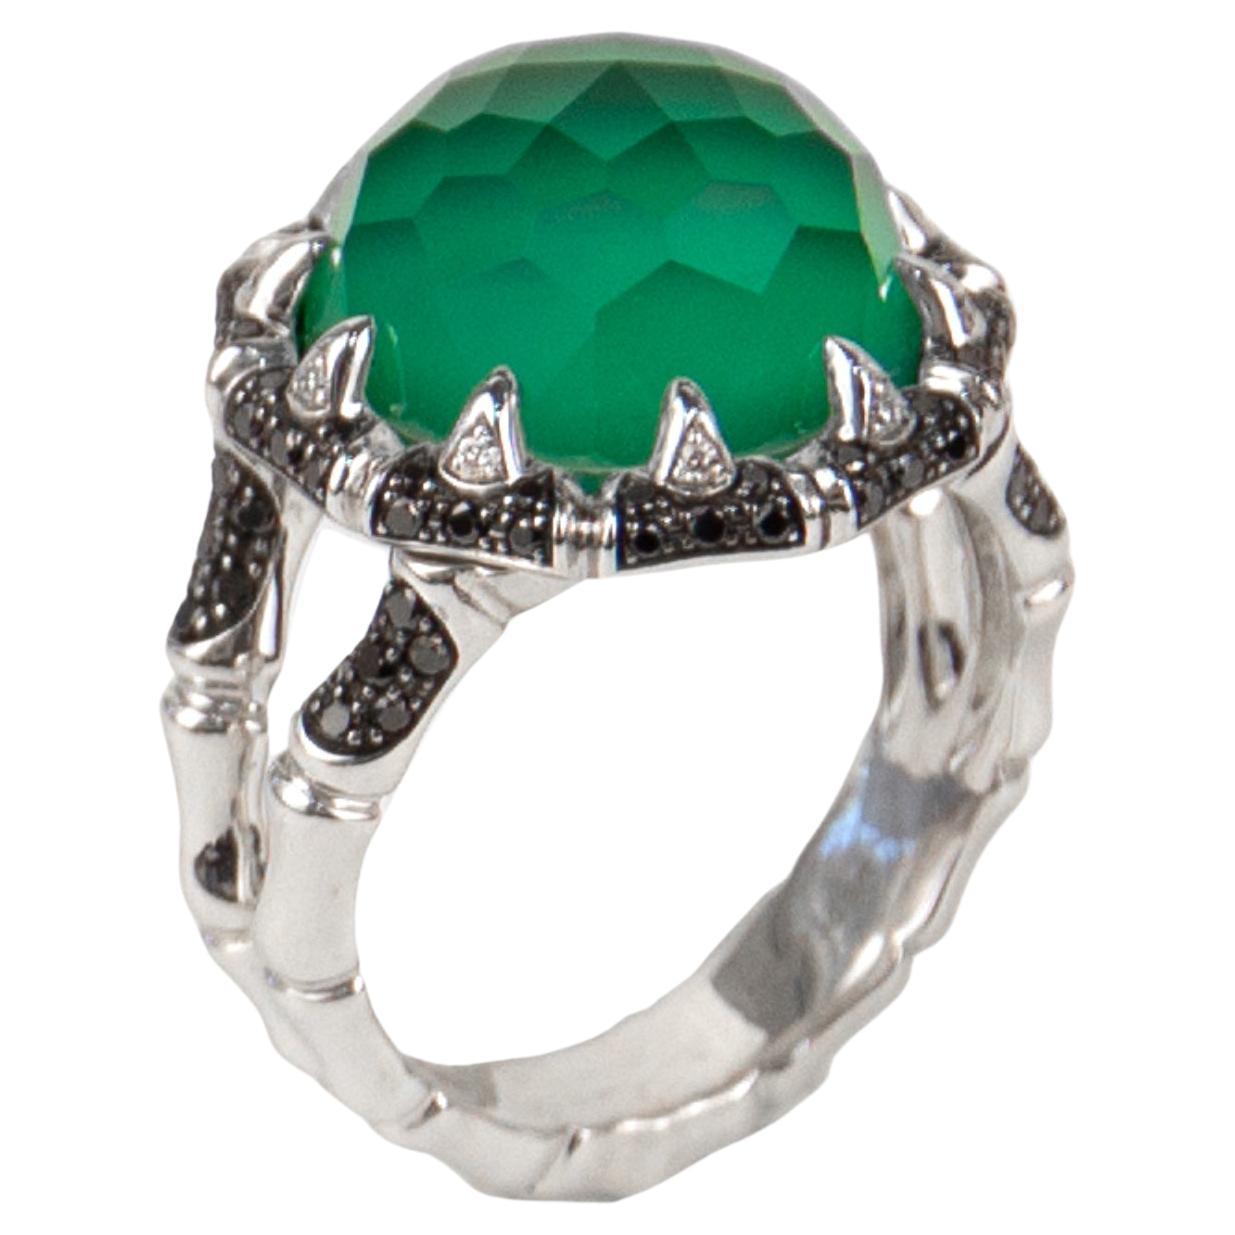 Stephen Webster 18k White Gold Diamond & Green Agate Ring